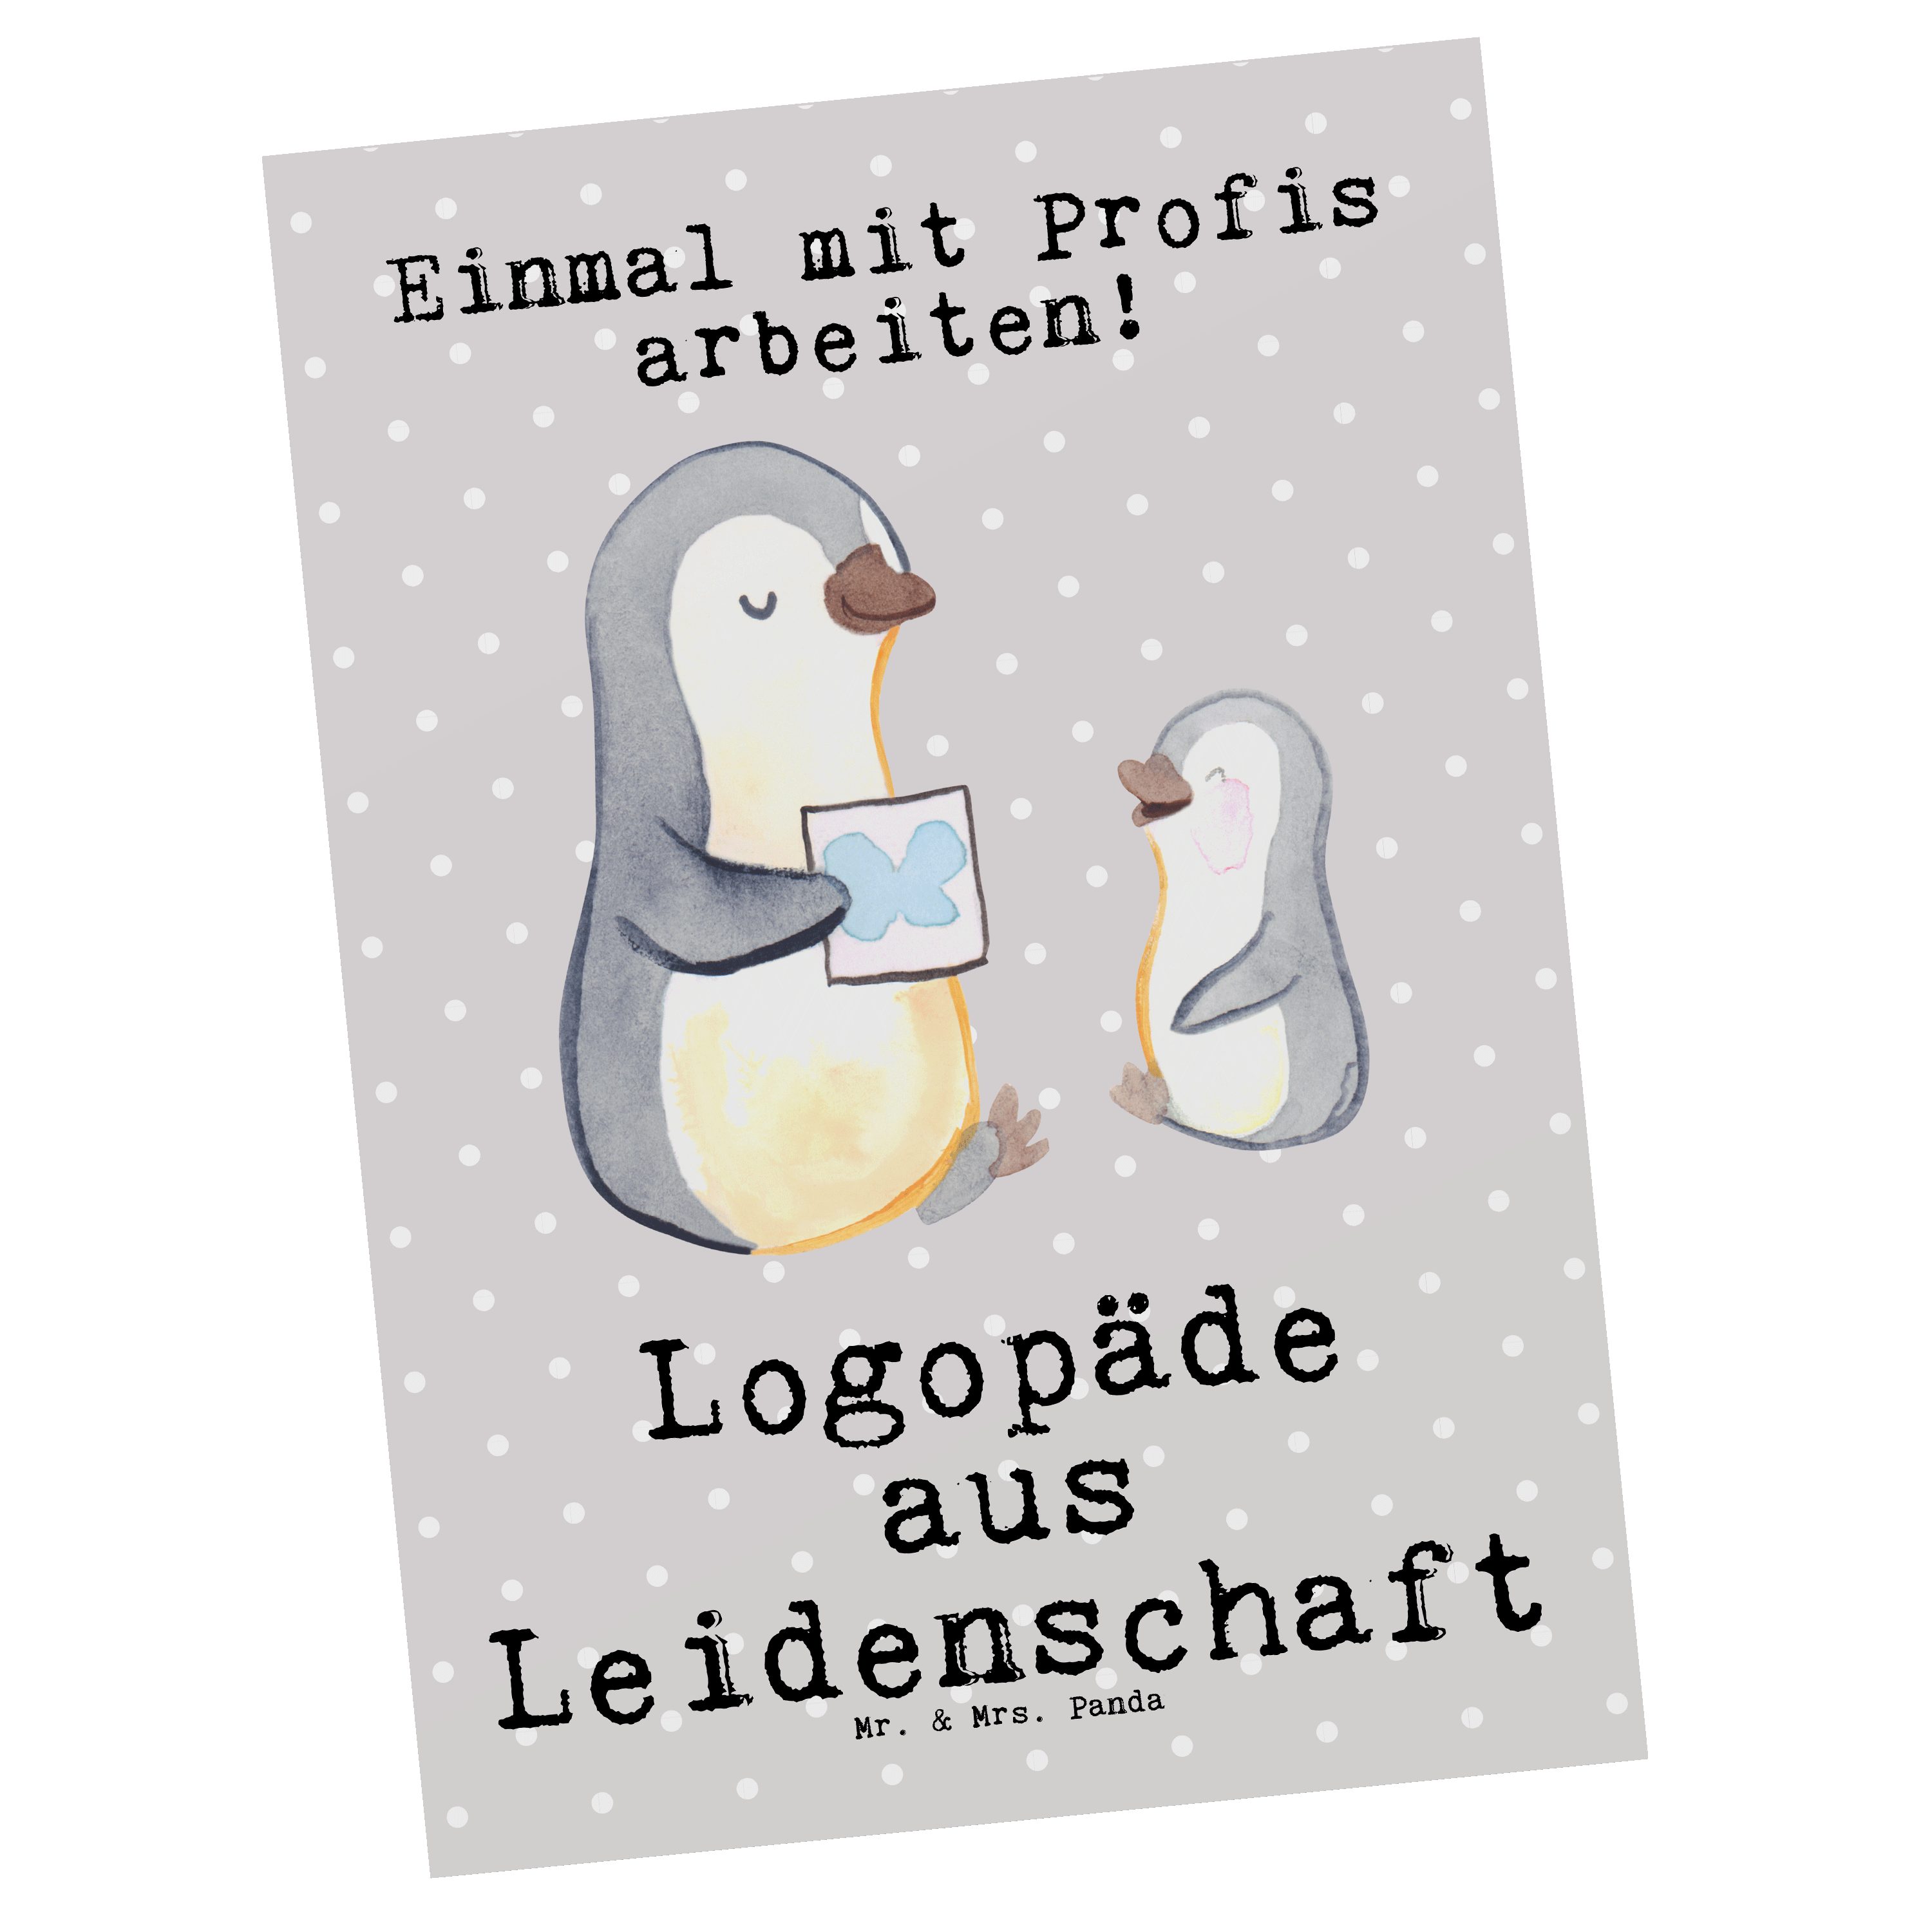 Mr. & Mrs. Pastell Leidenschaft Panda aus - Geschenk, Kindergarten, Ab Logopäde - Grau Postkarte